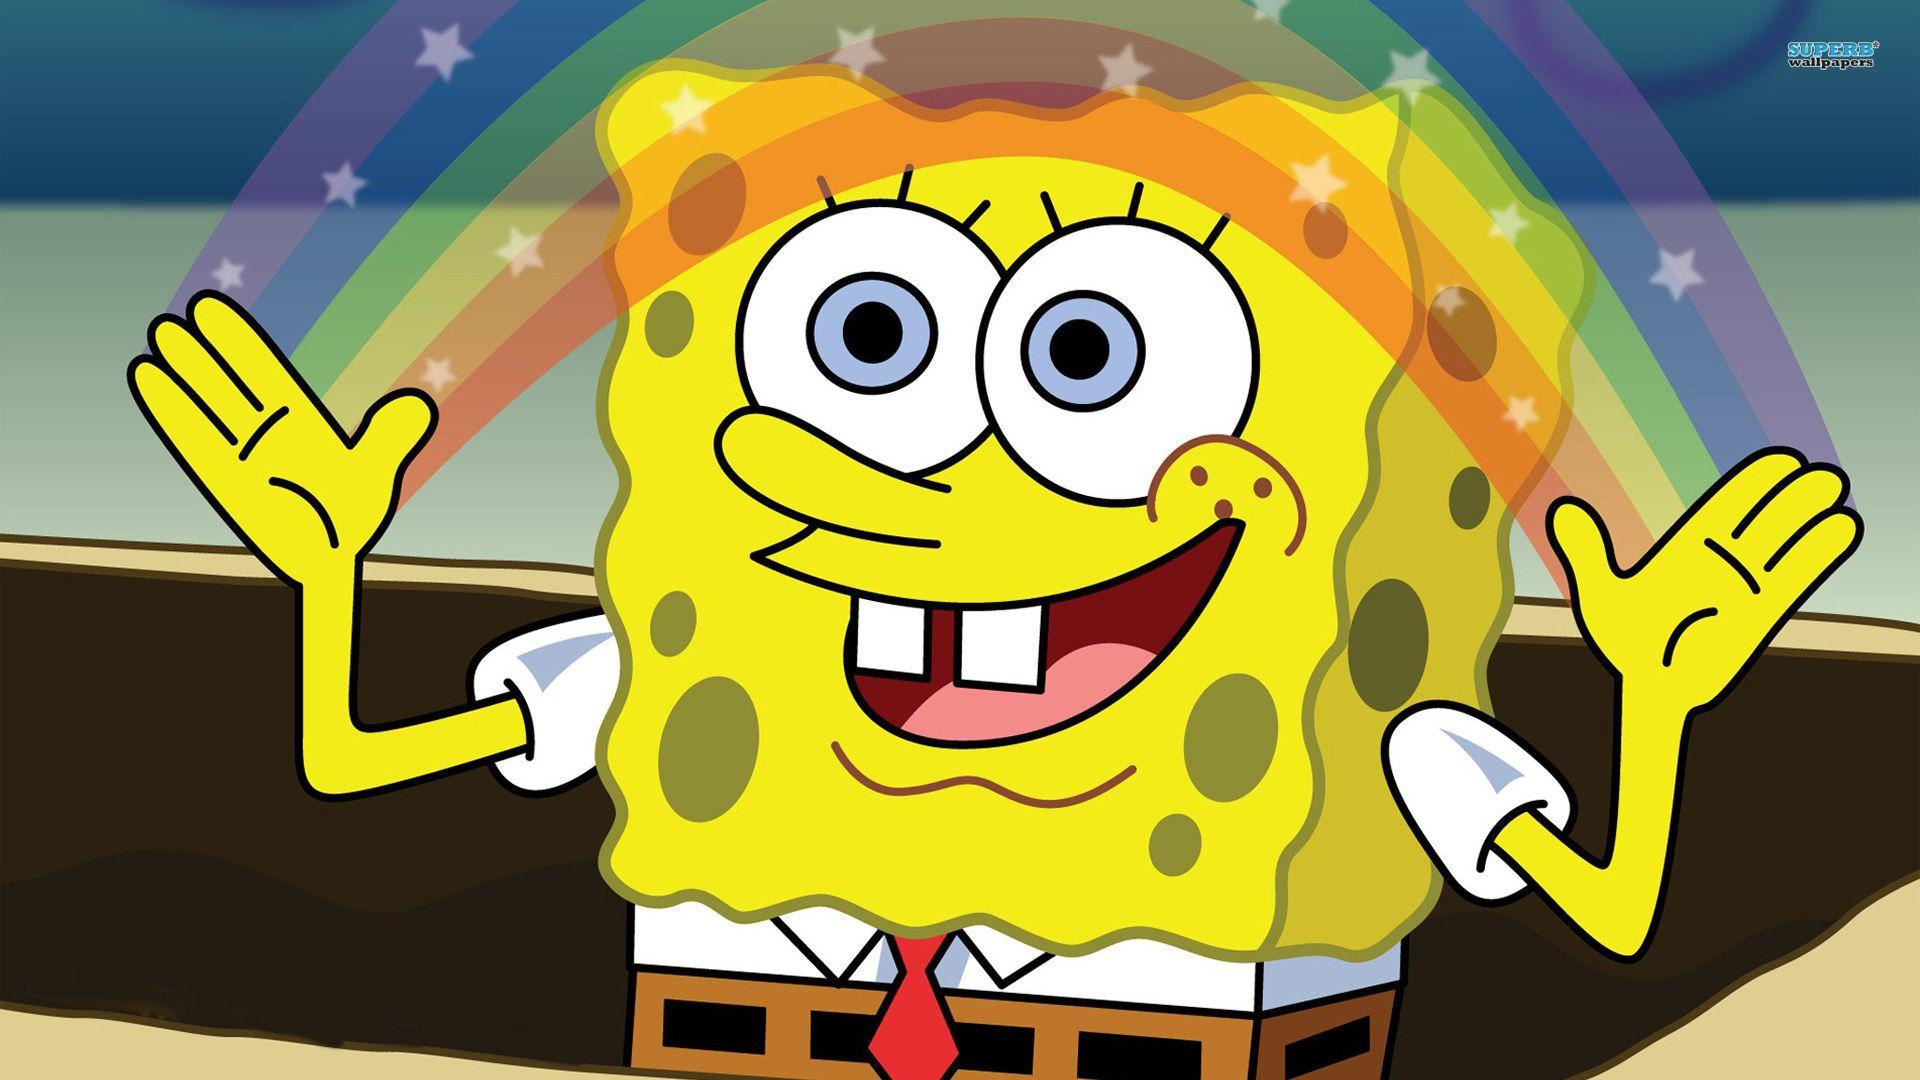 Spongebob Squarepants HD Wallpaper Image for iPhone 6